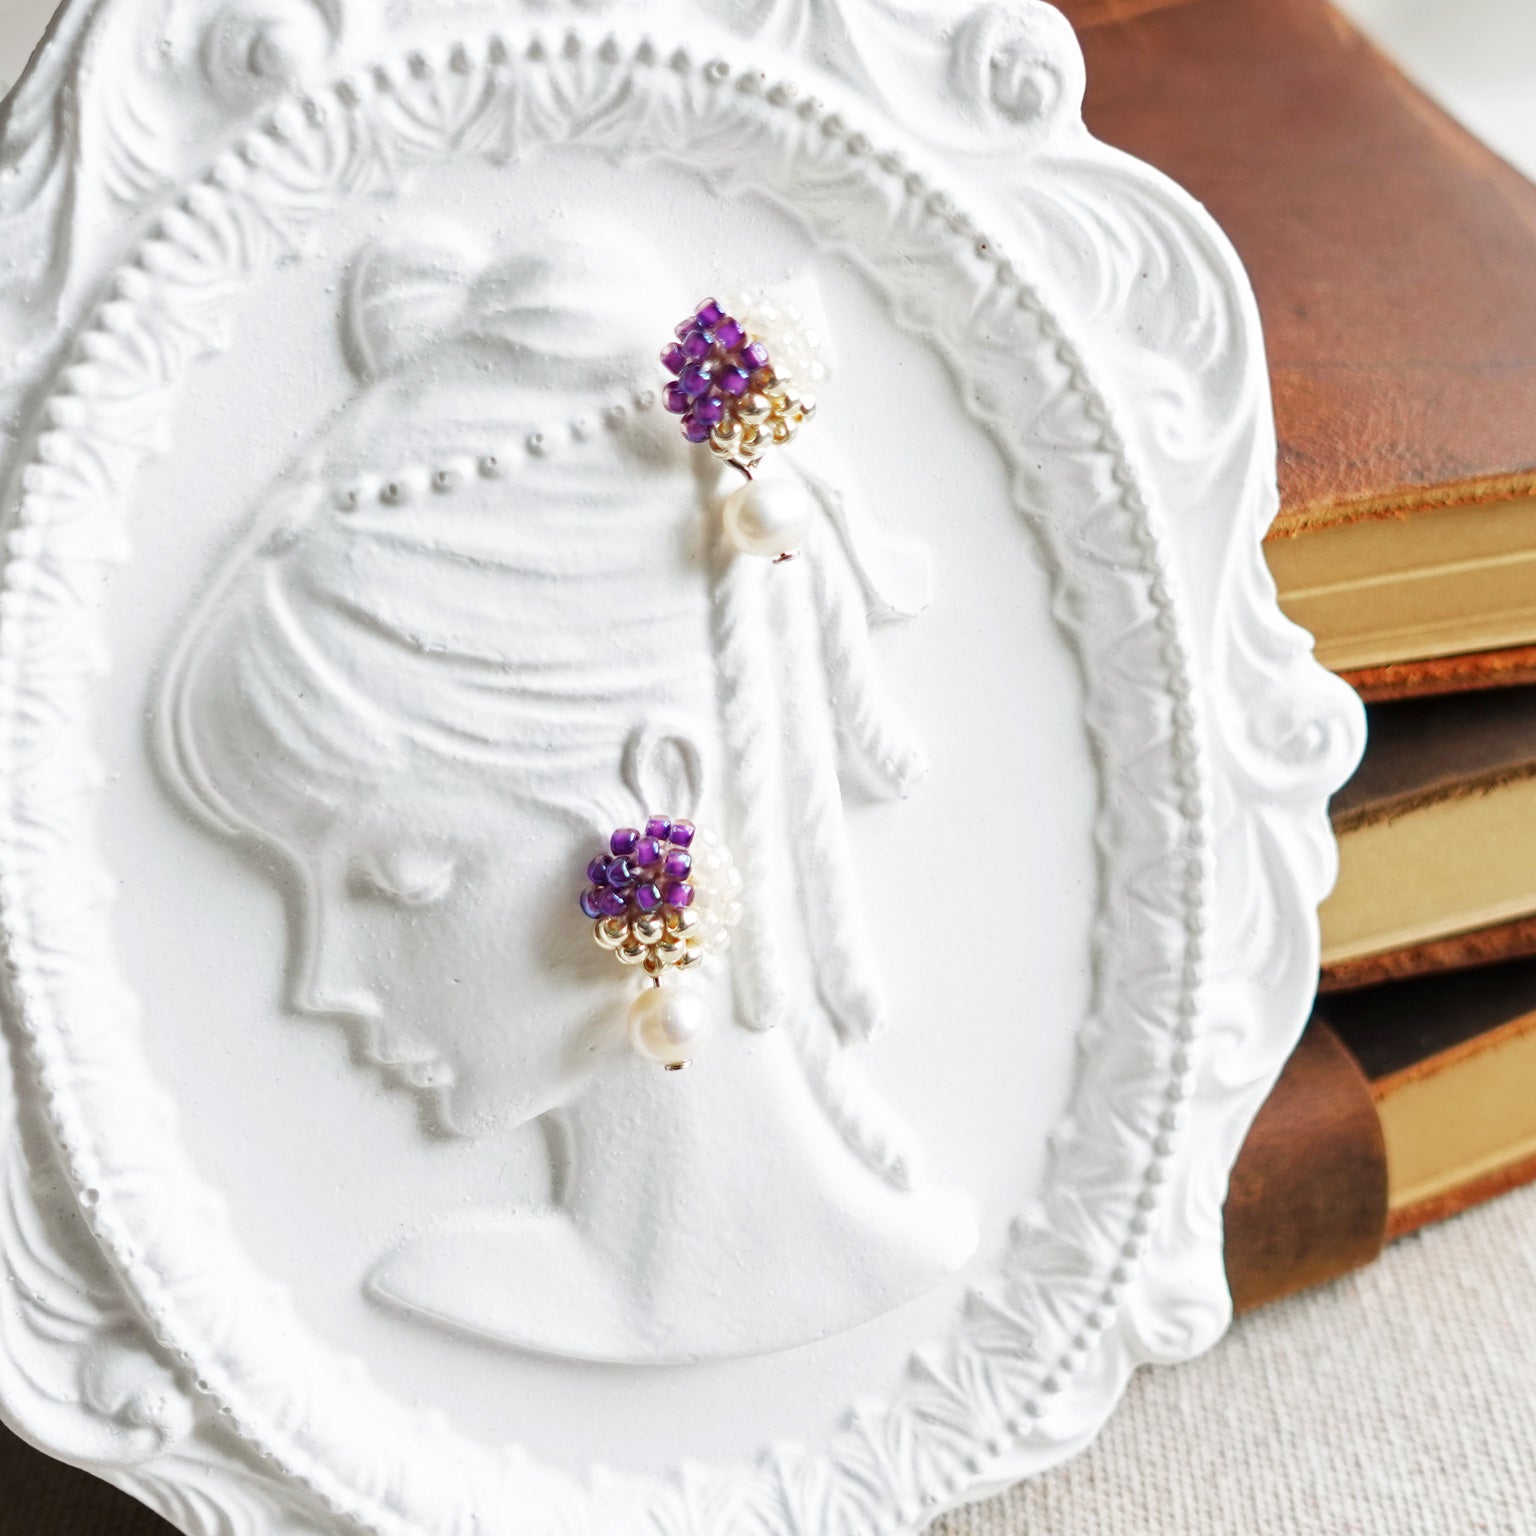 Phoebe Trio Earrings in Royal Purple Frame